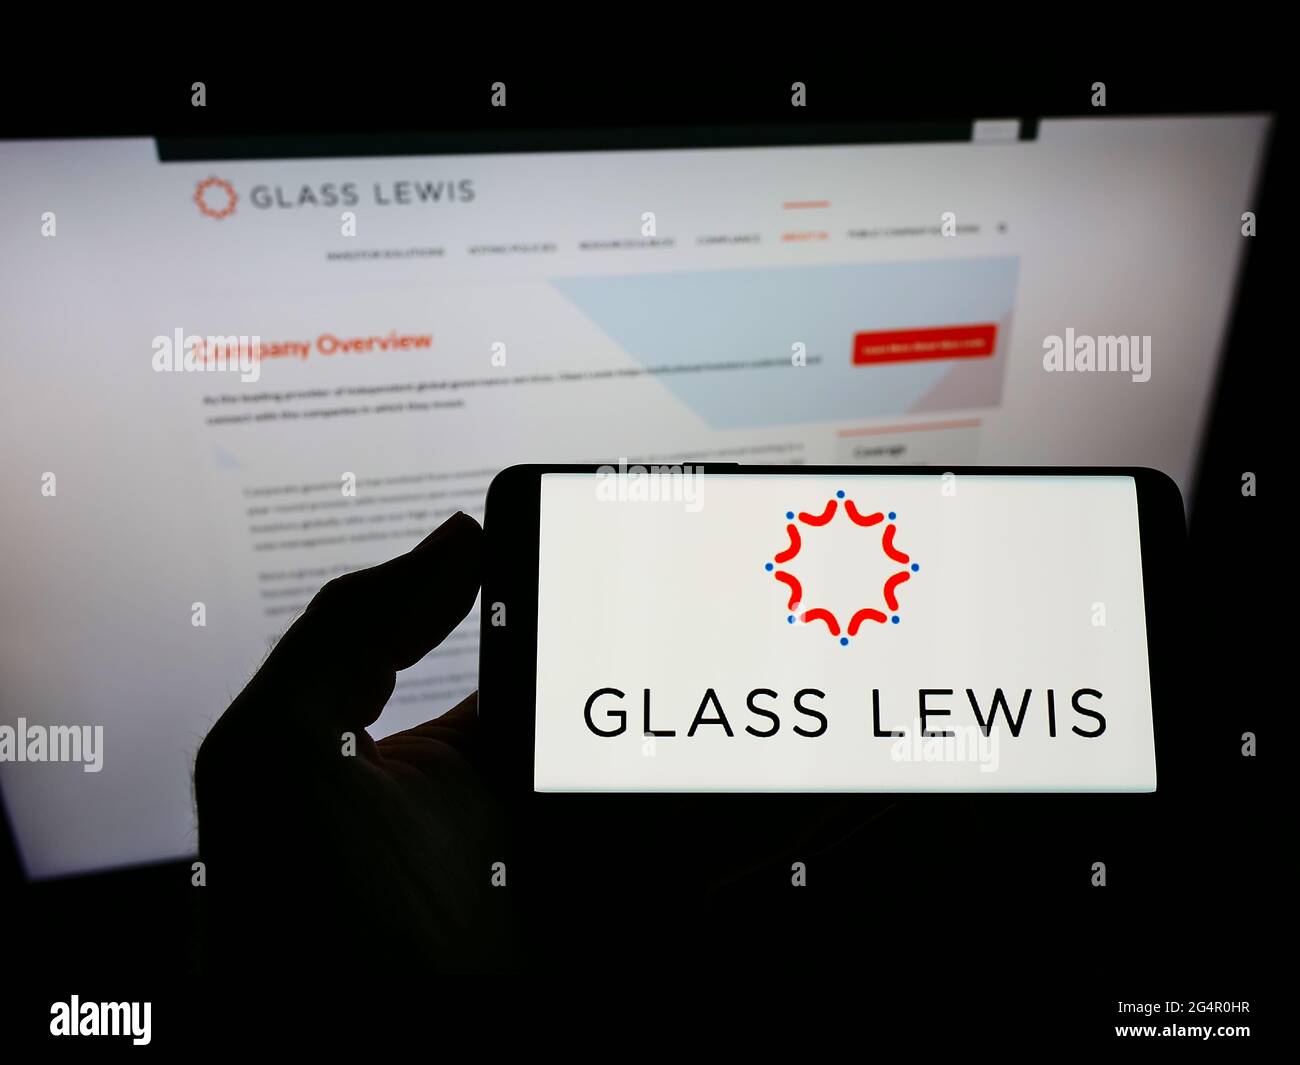 Persona che detiene smartphone con il logo della società americana di consulenza proxy Glass, Lewis Co. Sullo schermo di fronte al sito web. Mettere a fuoco il display del telefono. Foto Stock